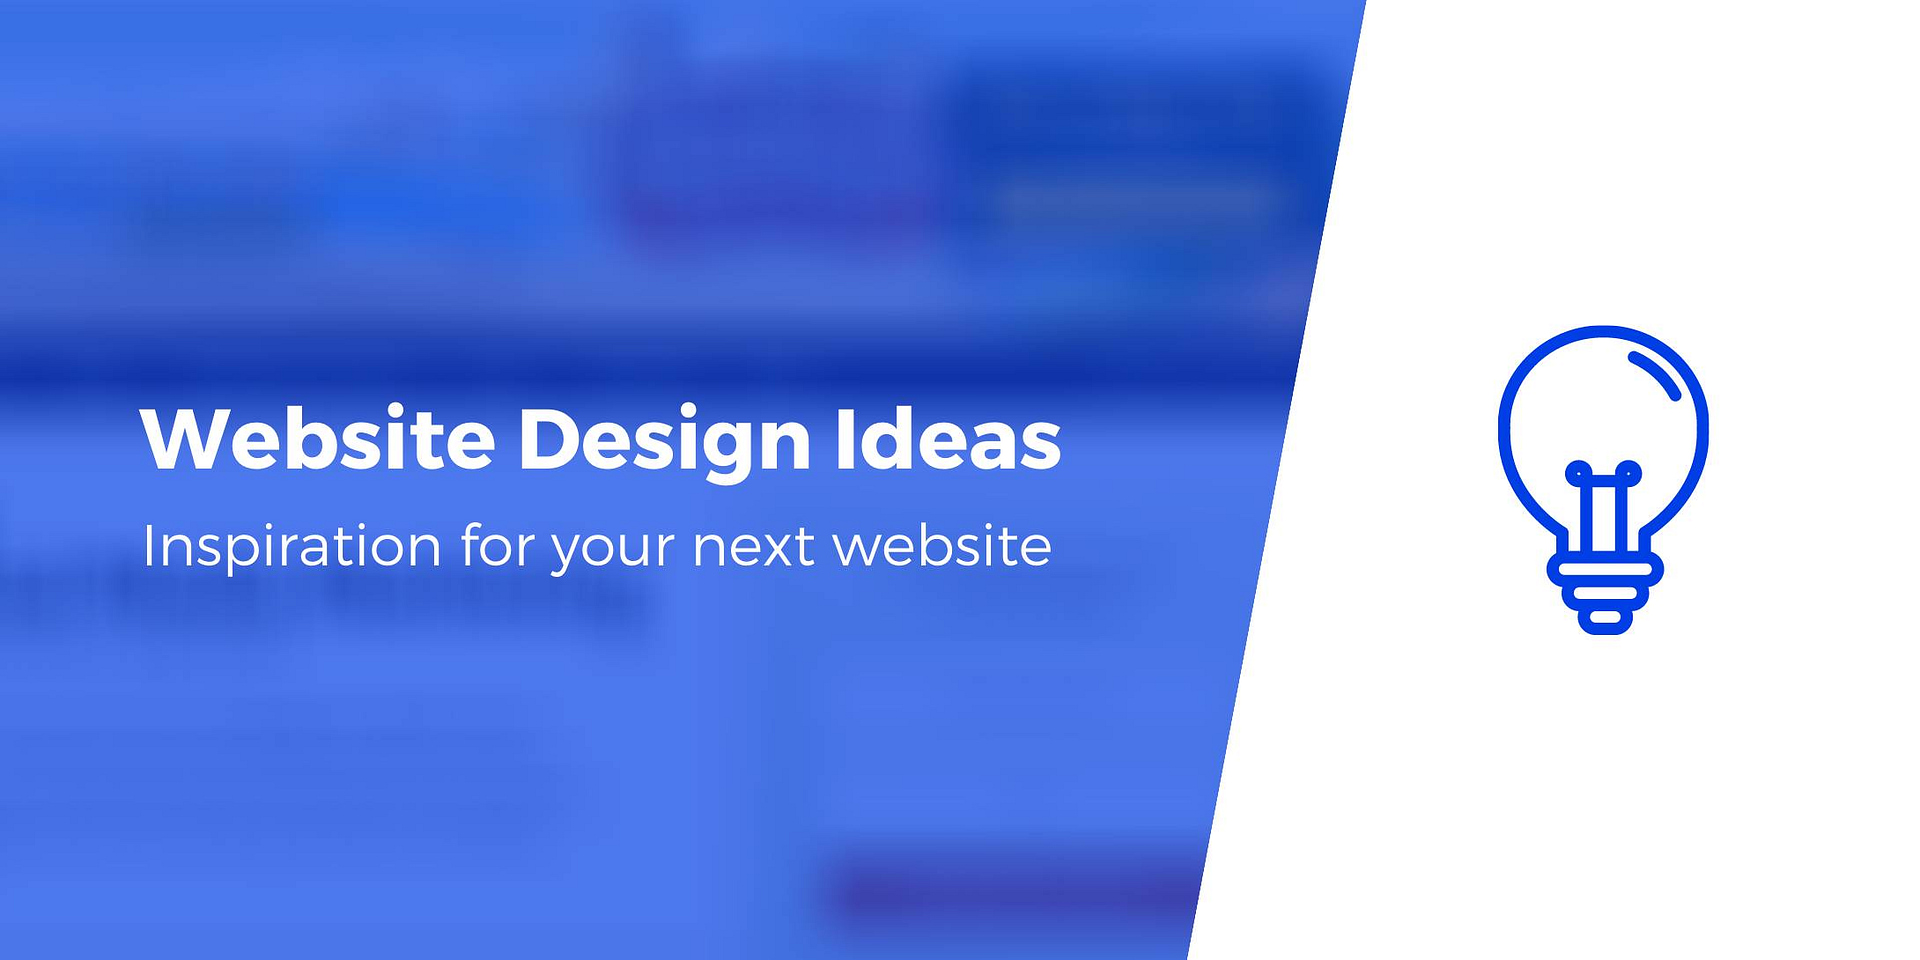 Halifax Website Design